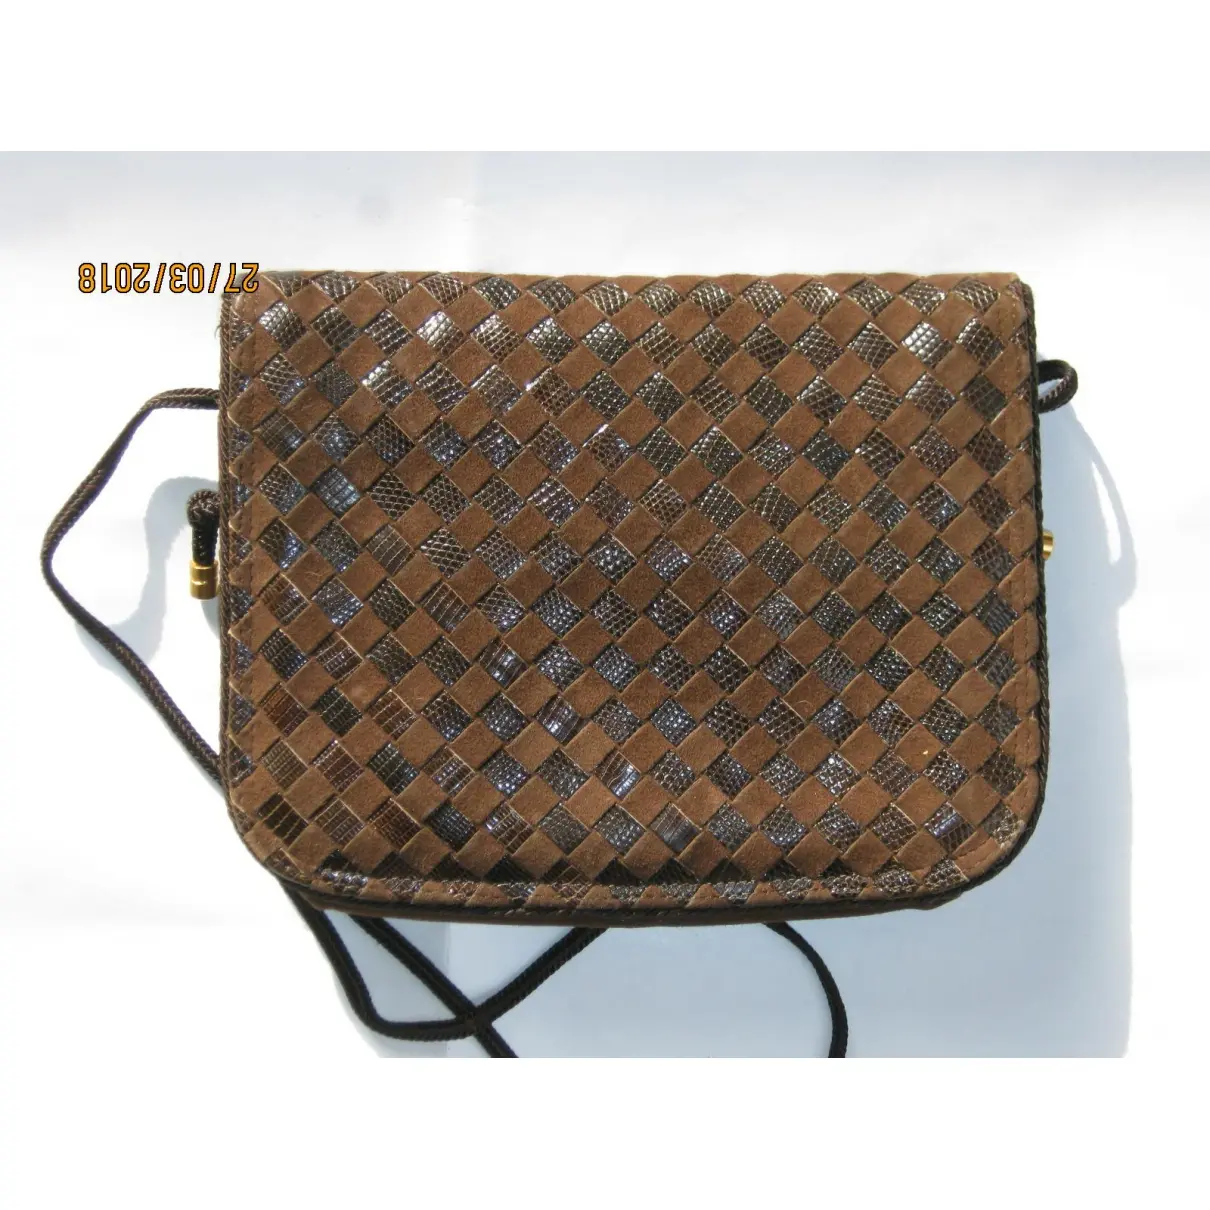 Bottega Veneta Leather clutch bag for sale - Vintage